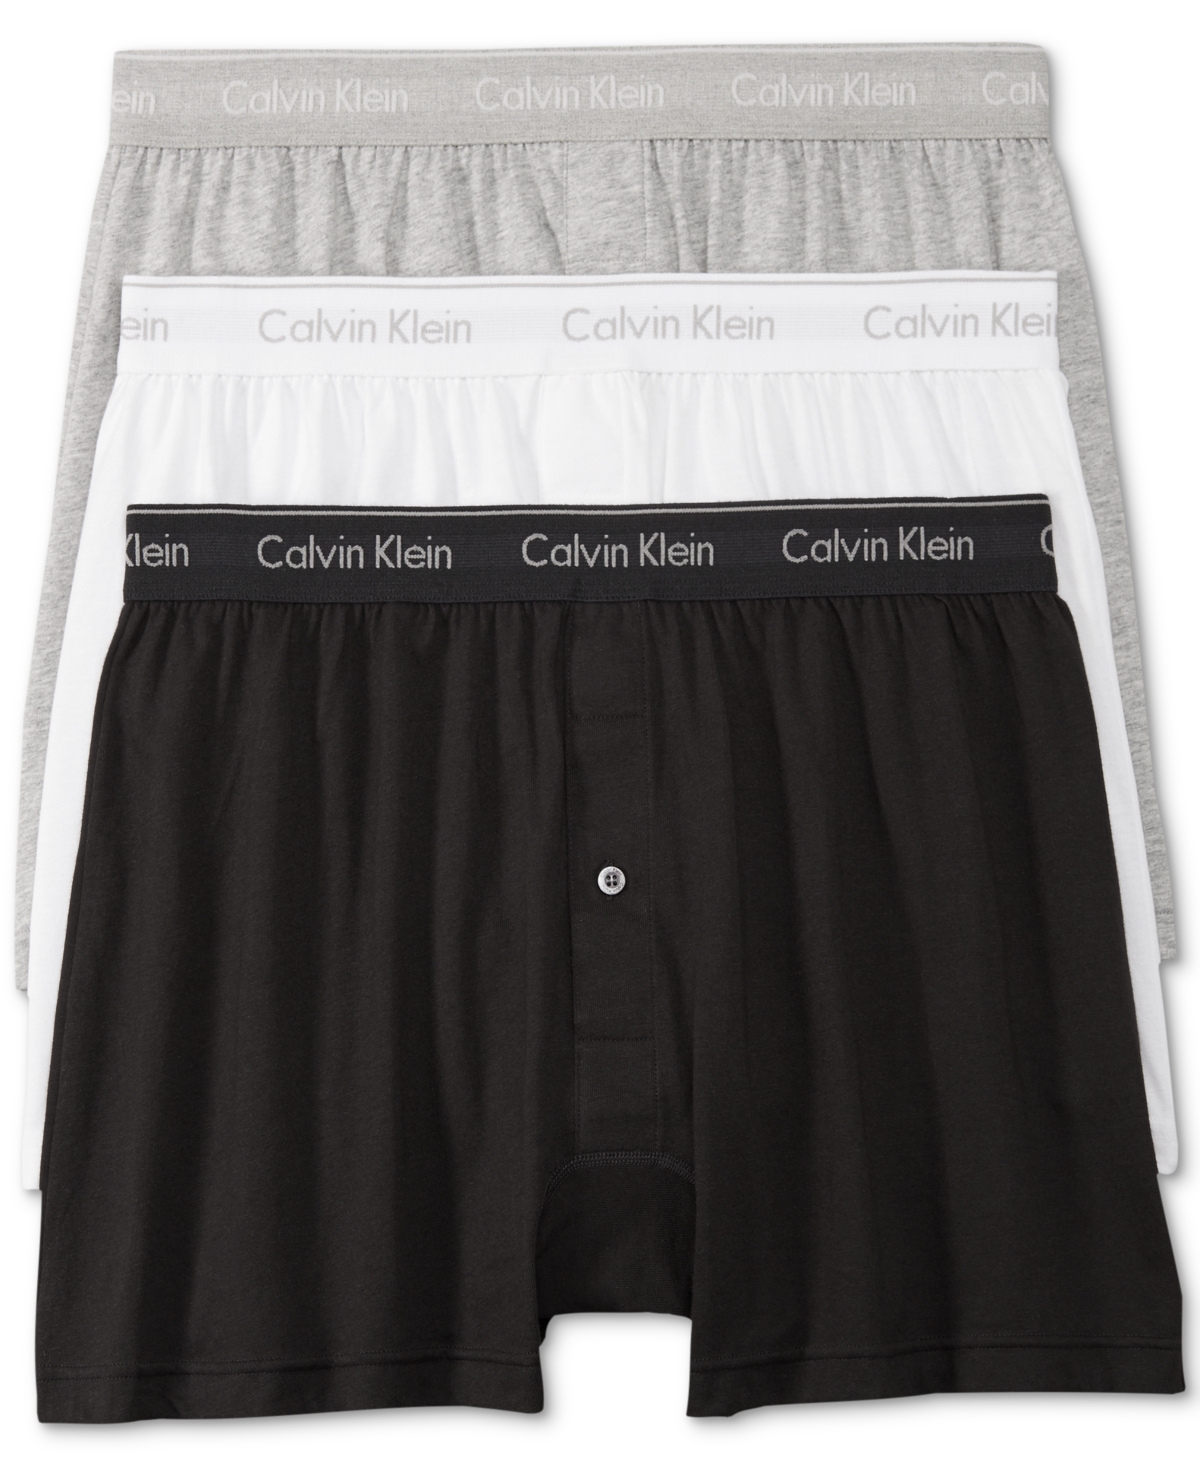 Men's 3-Pack Cotton Classics Knit Boxers Underwear - Blue Multi